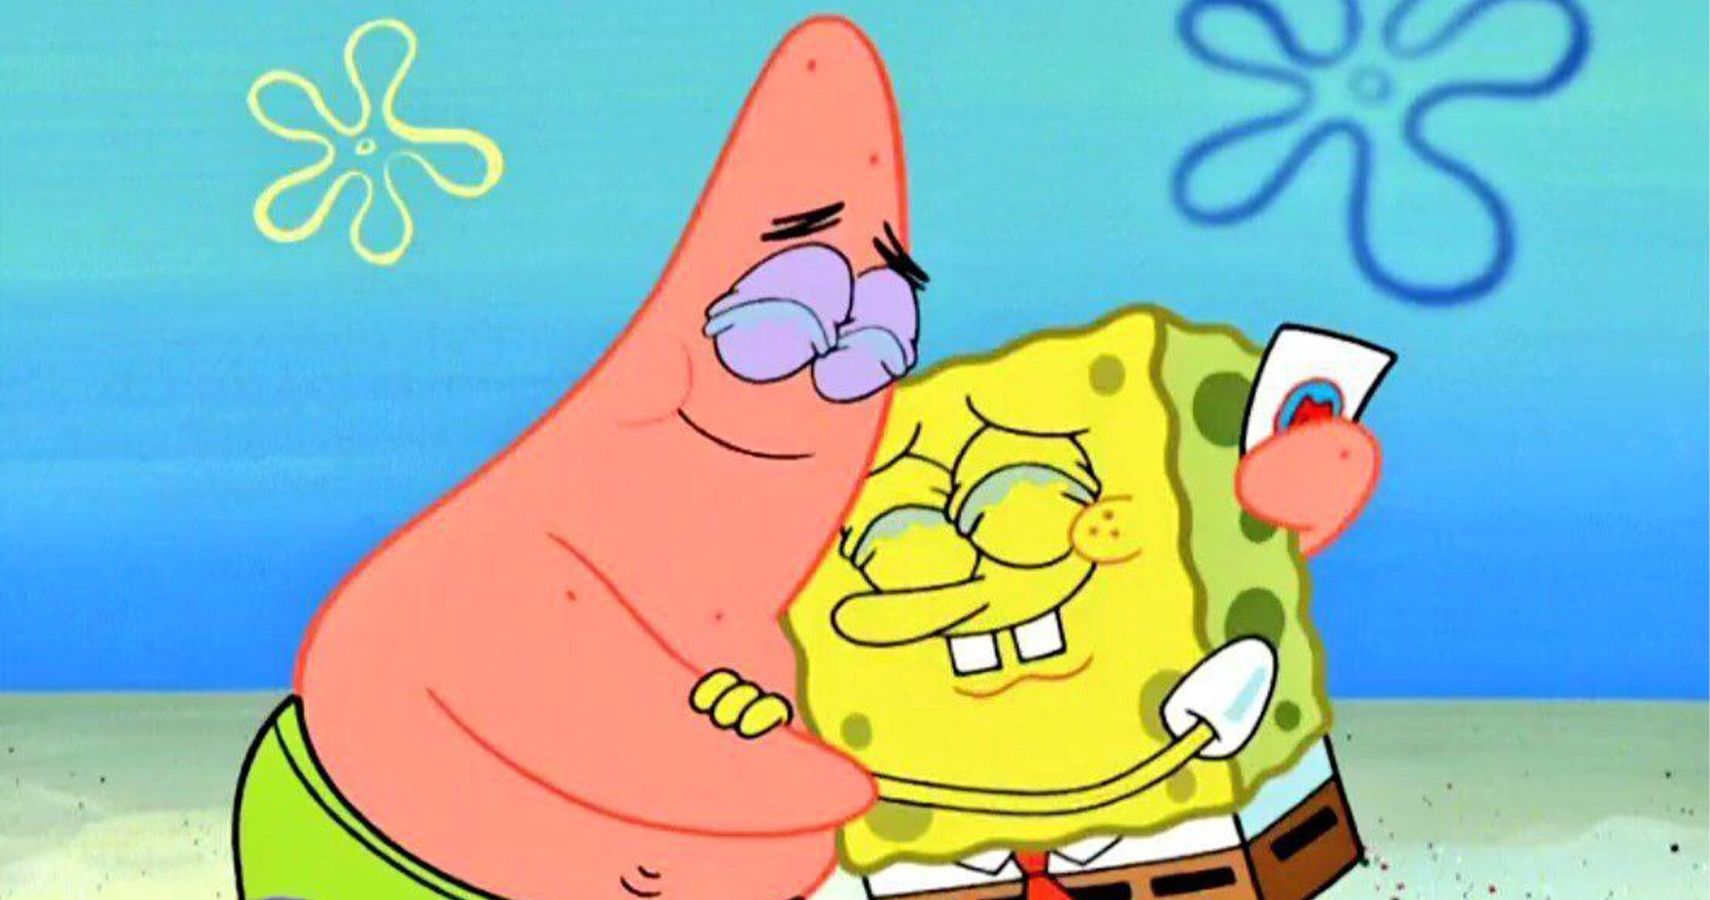 Spongebob and Patrick hugging